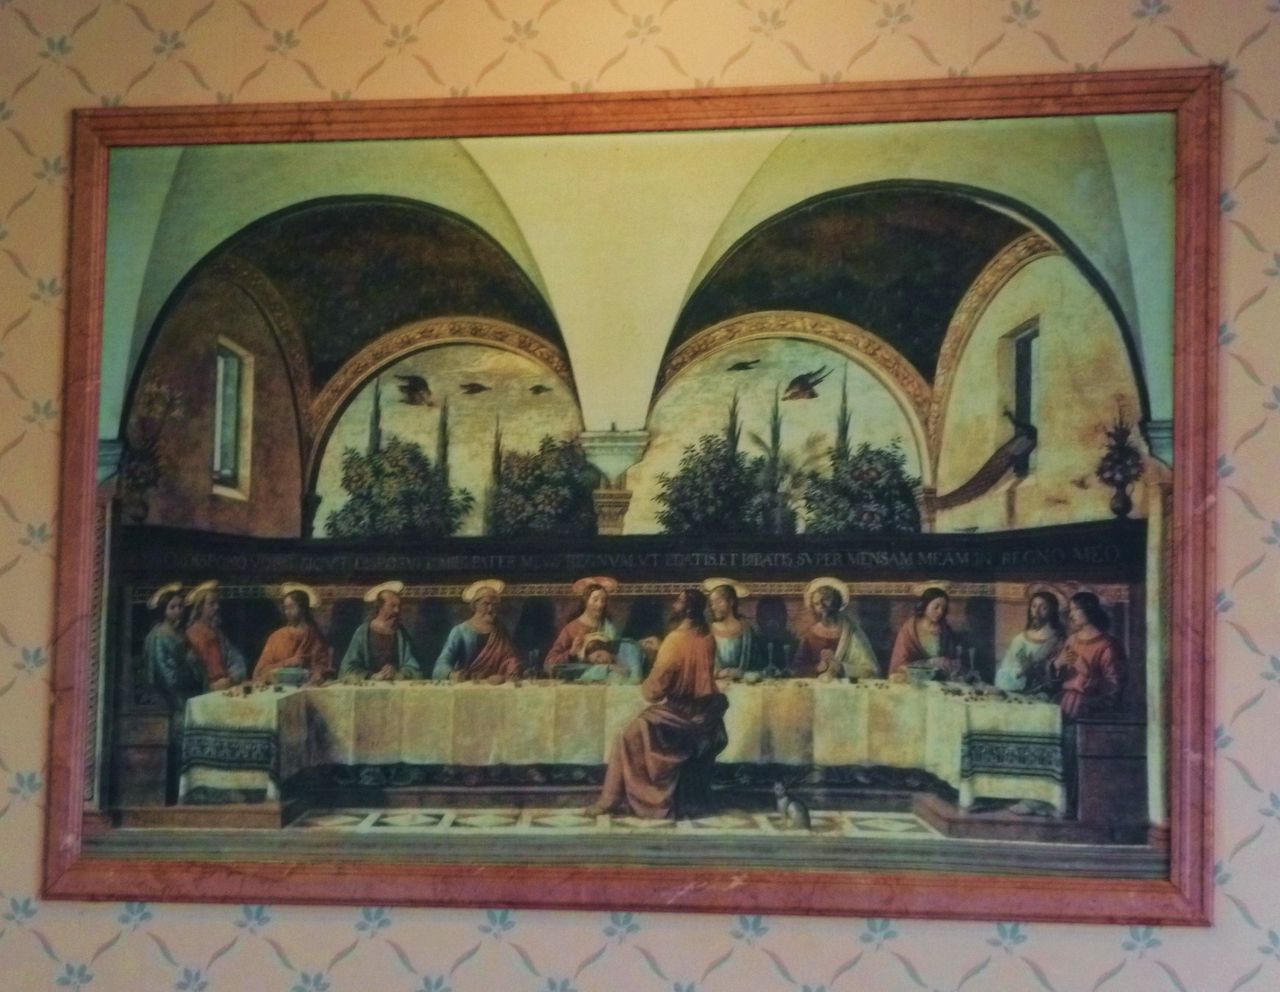 サイゼリアにあった 最後の晩餐 は ダビンチじゃなくギルランダイオ作でした 印象派画家の勘違い New